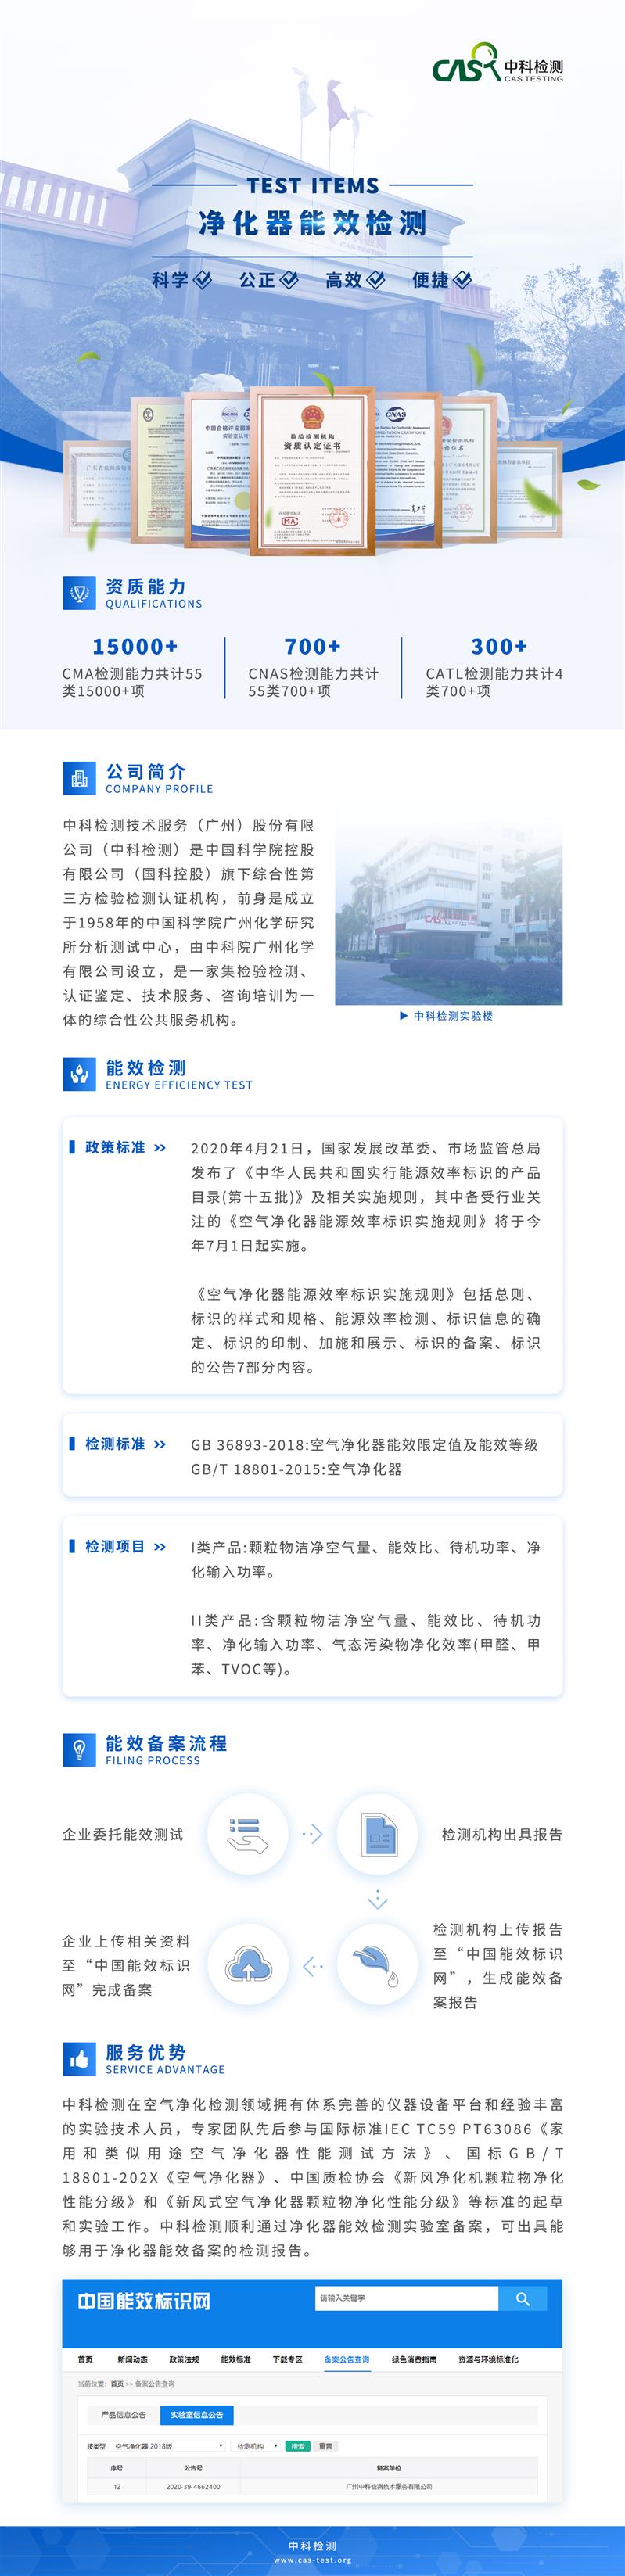 广东GB36893-2018空气净化器检测机构